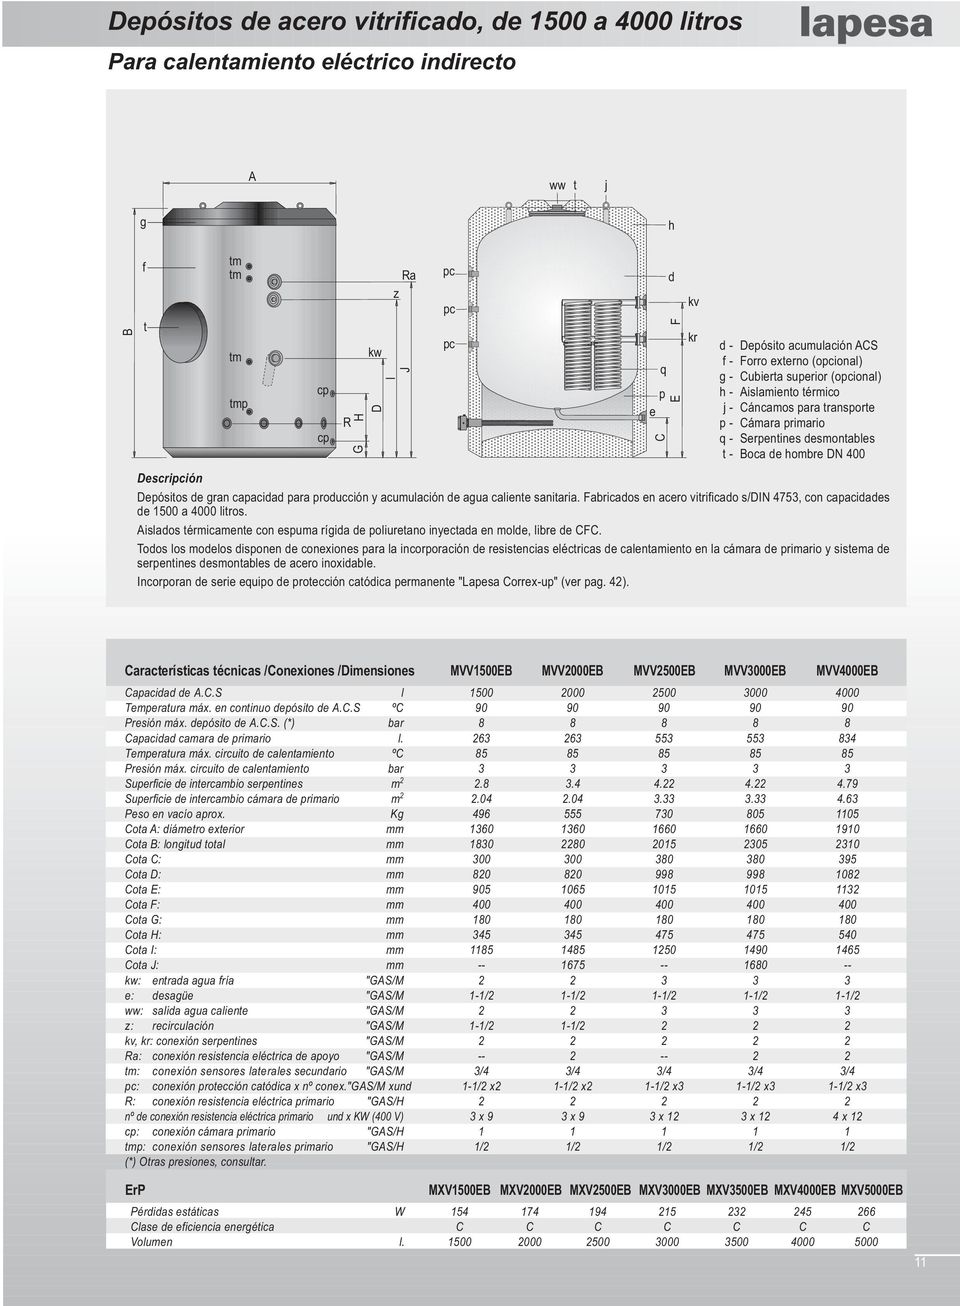 Descripción Depósitos de gran capacidad para producción y acumulación de agua caliente sanitaria. Fabricados en acero vitrificado s/din 4753, con capacidades de a 00 litros.